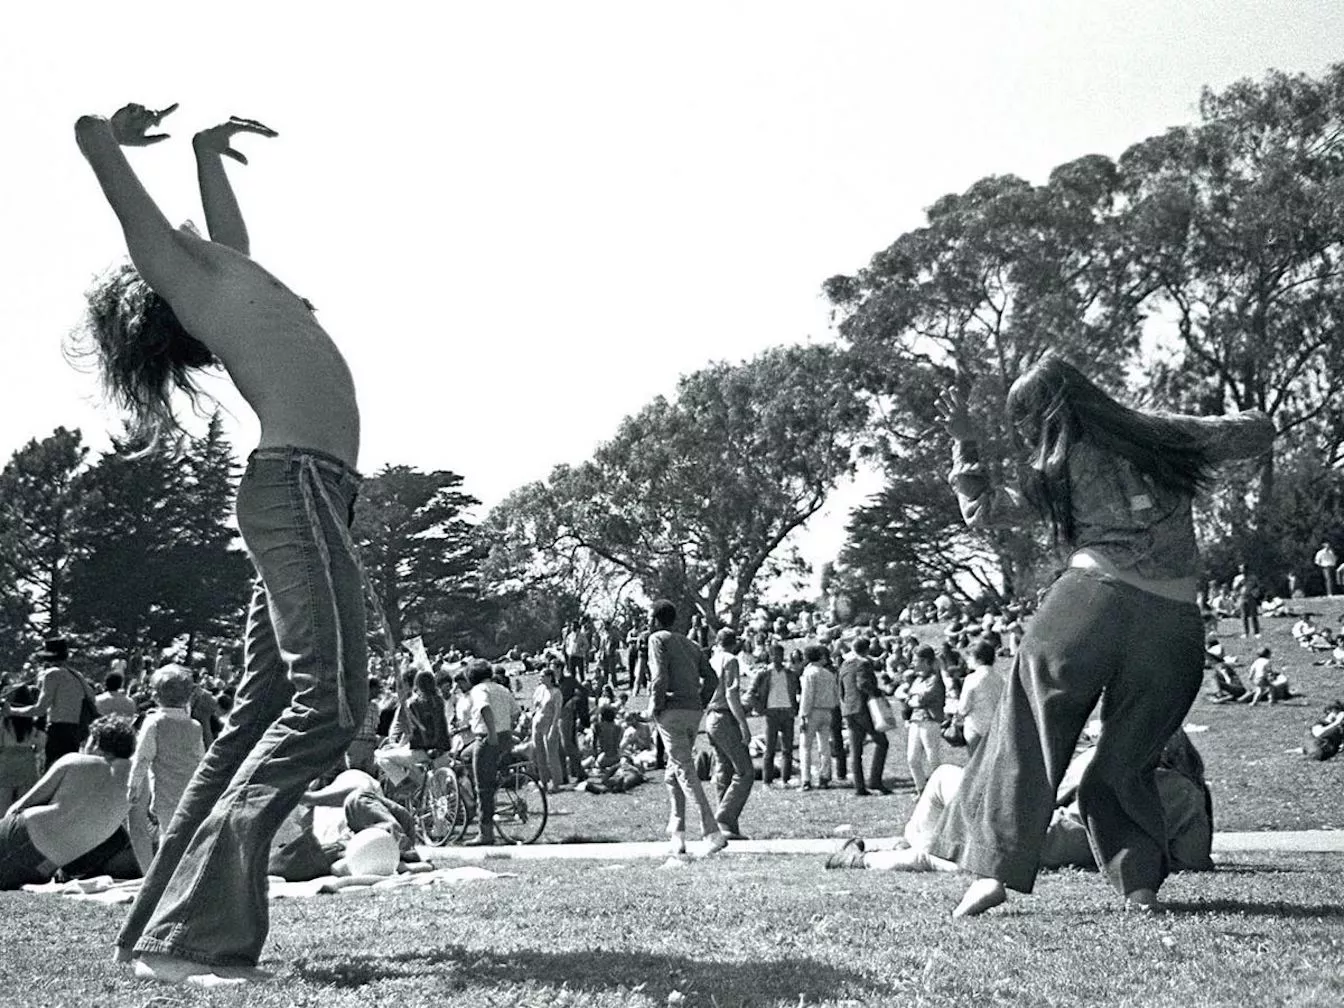 Vida en comunitat i rebuig a la guerra, alguns dels preceptes 'hippies' durant els anys 60